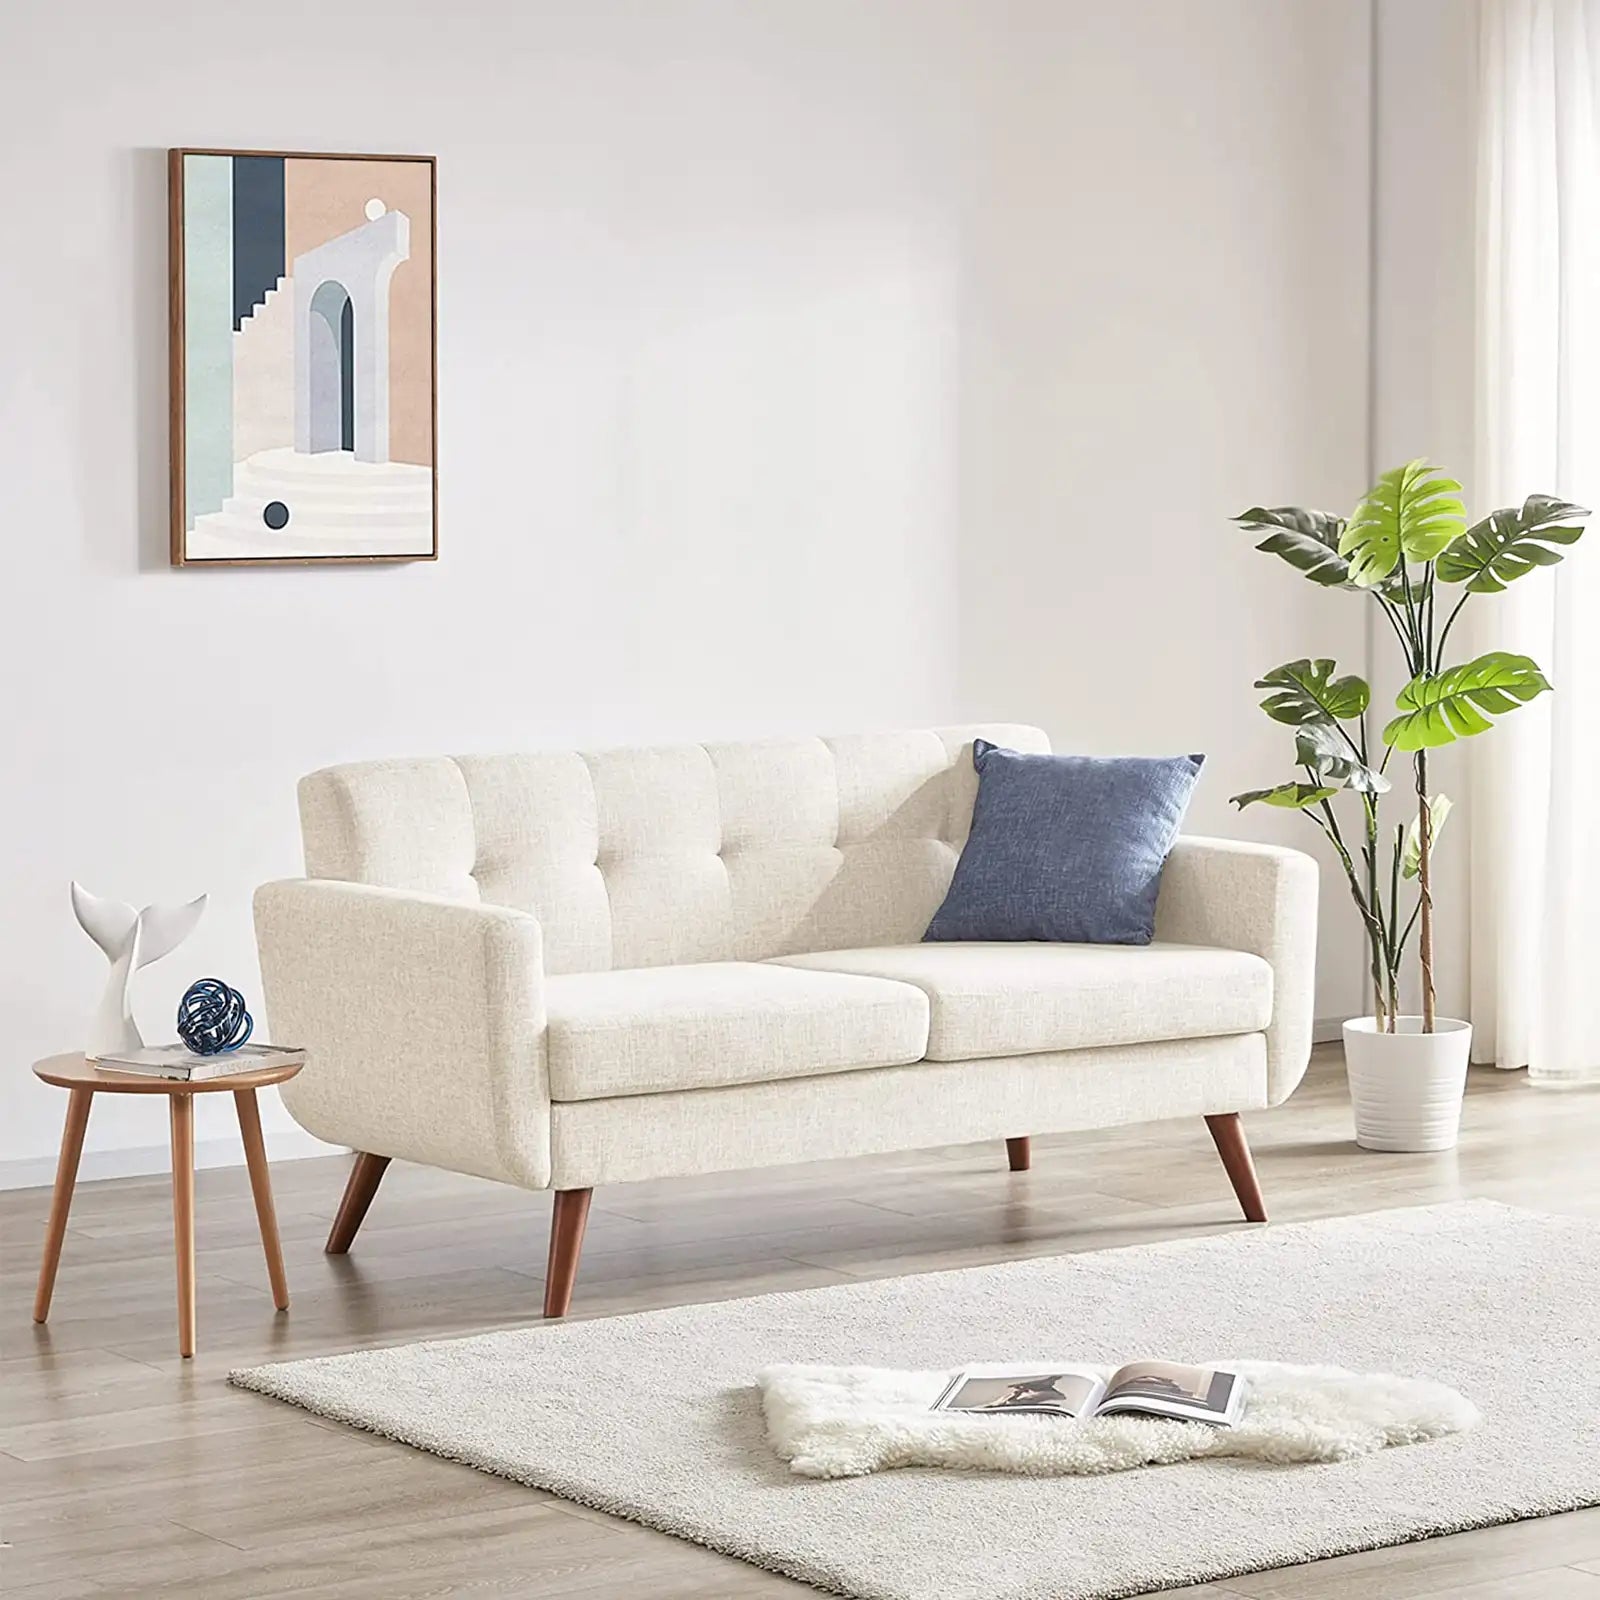 Loveseat Sofa, Mid Century Modern Decor Love Seats Furniture